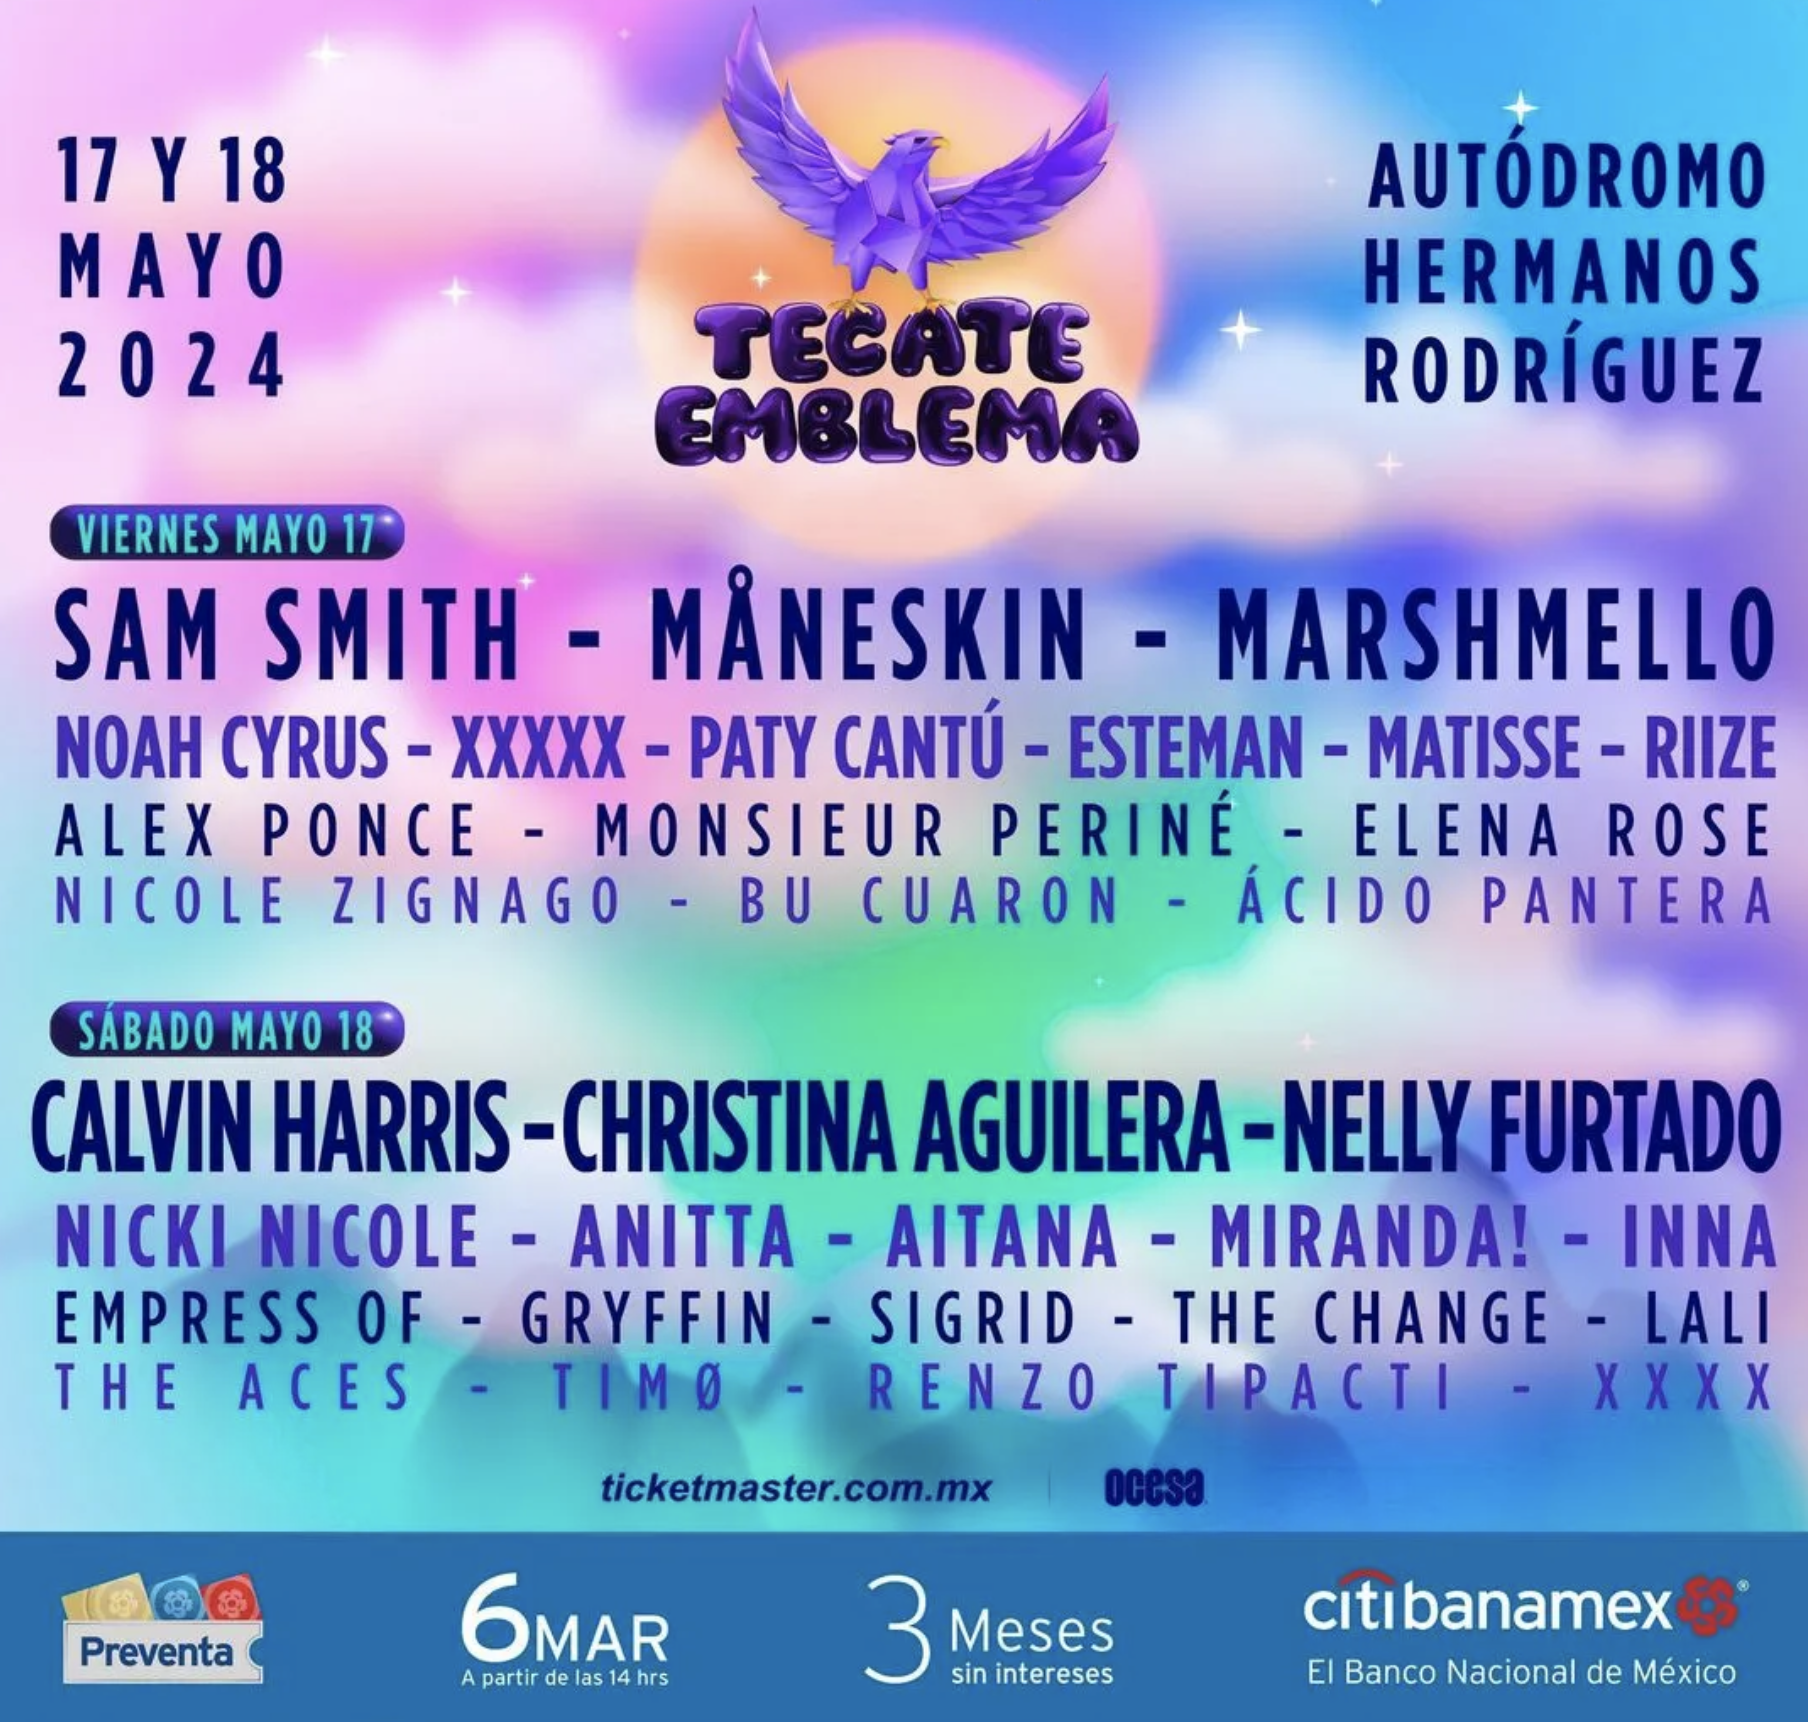 Cartel de concierto Tecate Emblema con artistas como Sam Smith, Christina Aguilera y Nelly Furtado para el 17 y 18 de mayo en Autódromo Hermanos Rodríguez